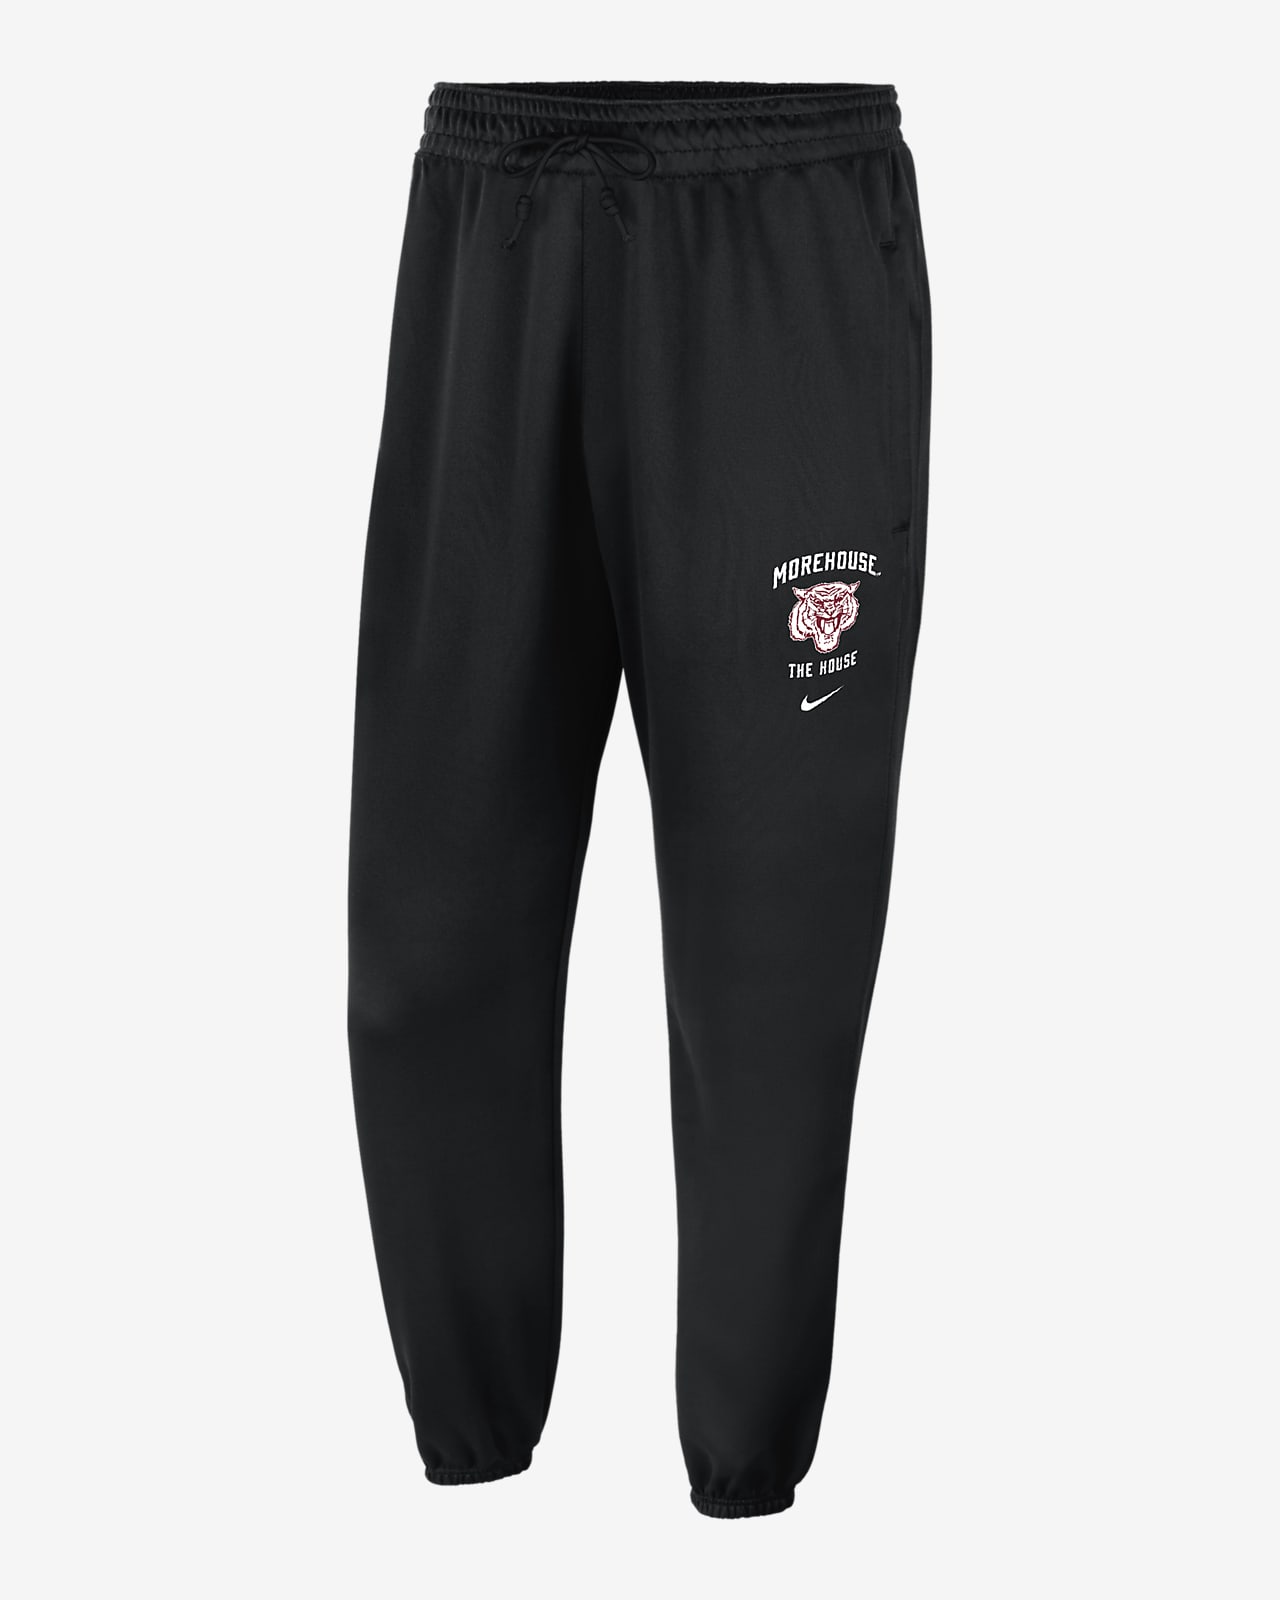 Joggers universitarios Nike de tejido Fleece para hombre Morehouse Standard Issue